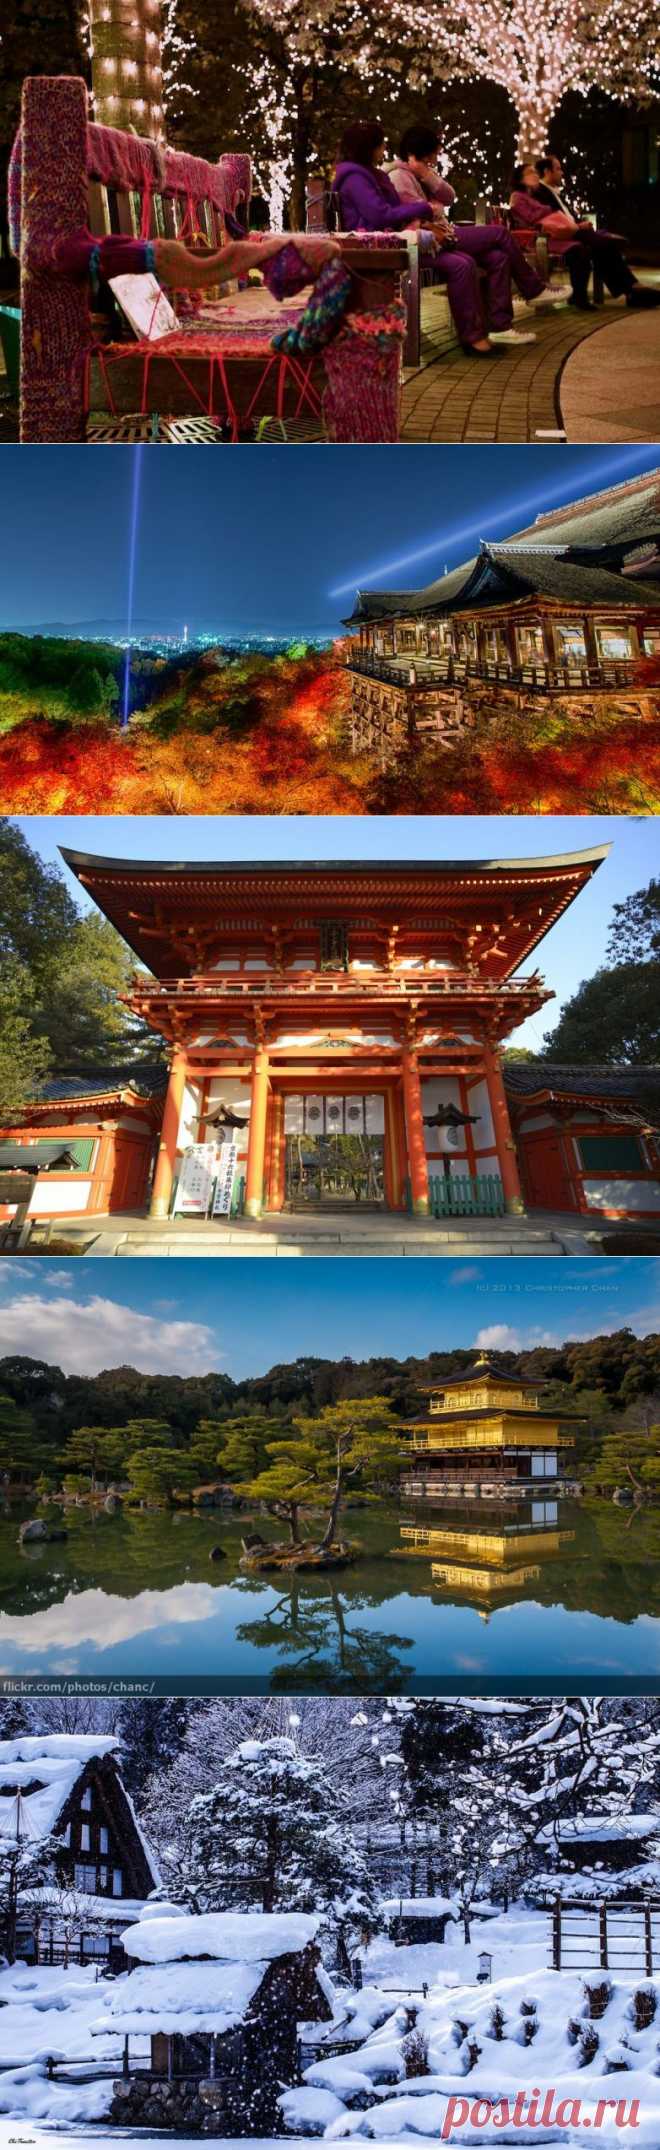 После этих фото вам захочется в Японию! / Туристический спутник